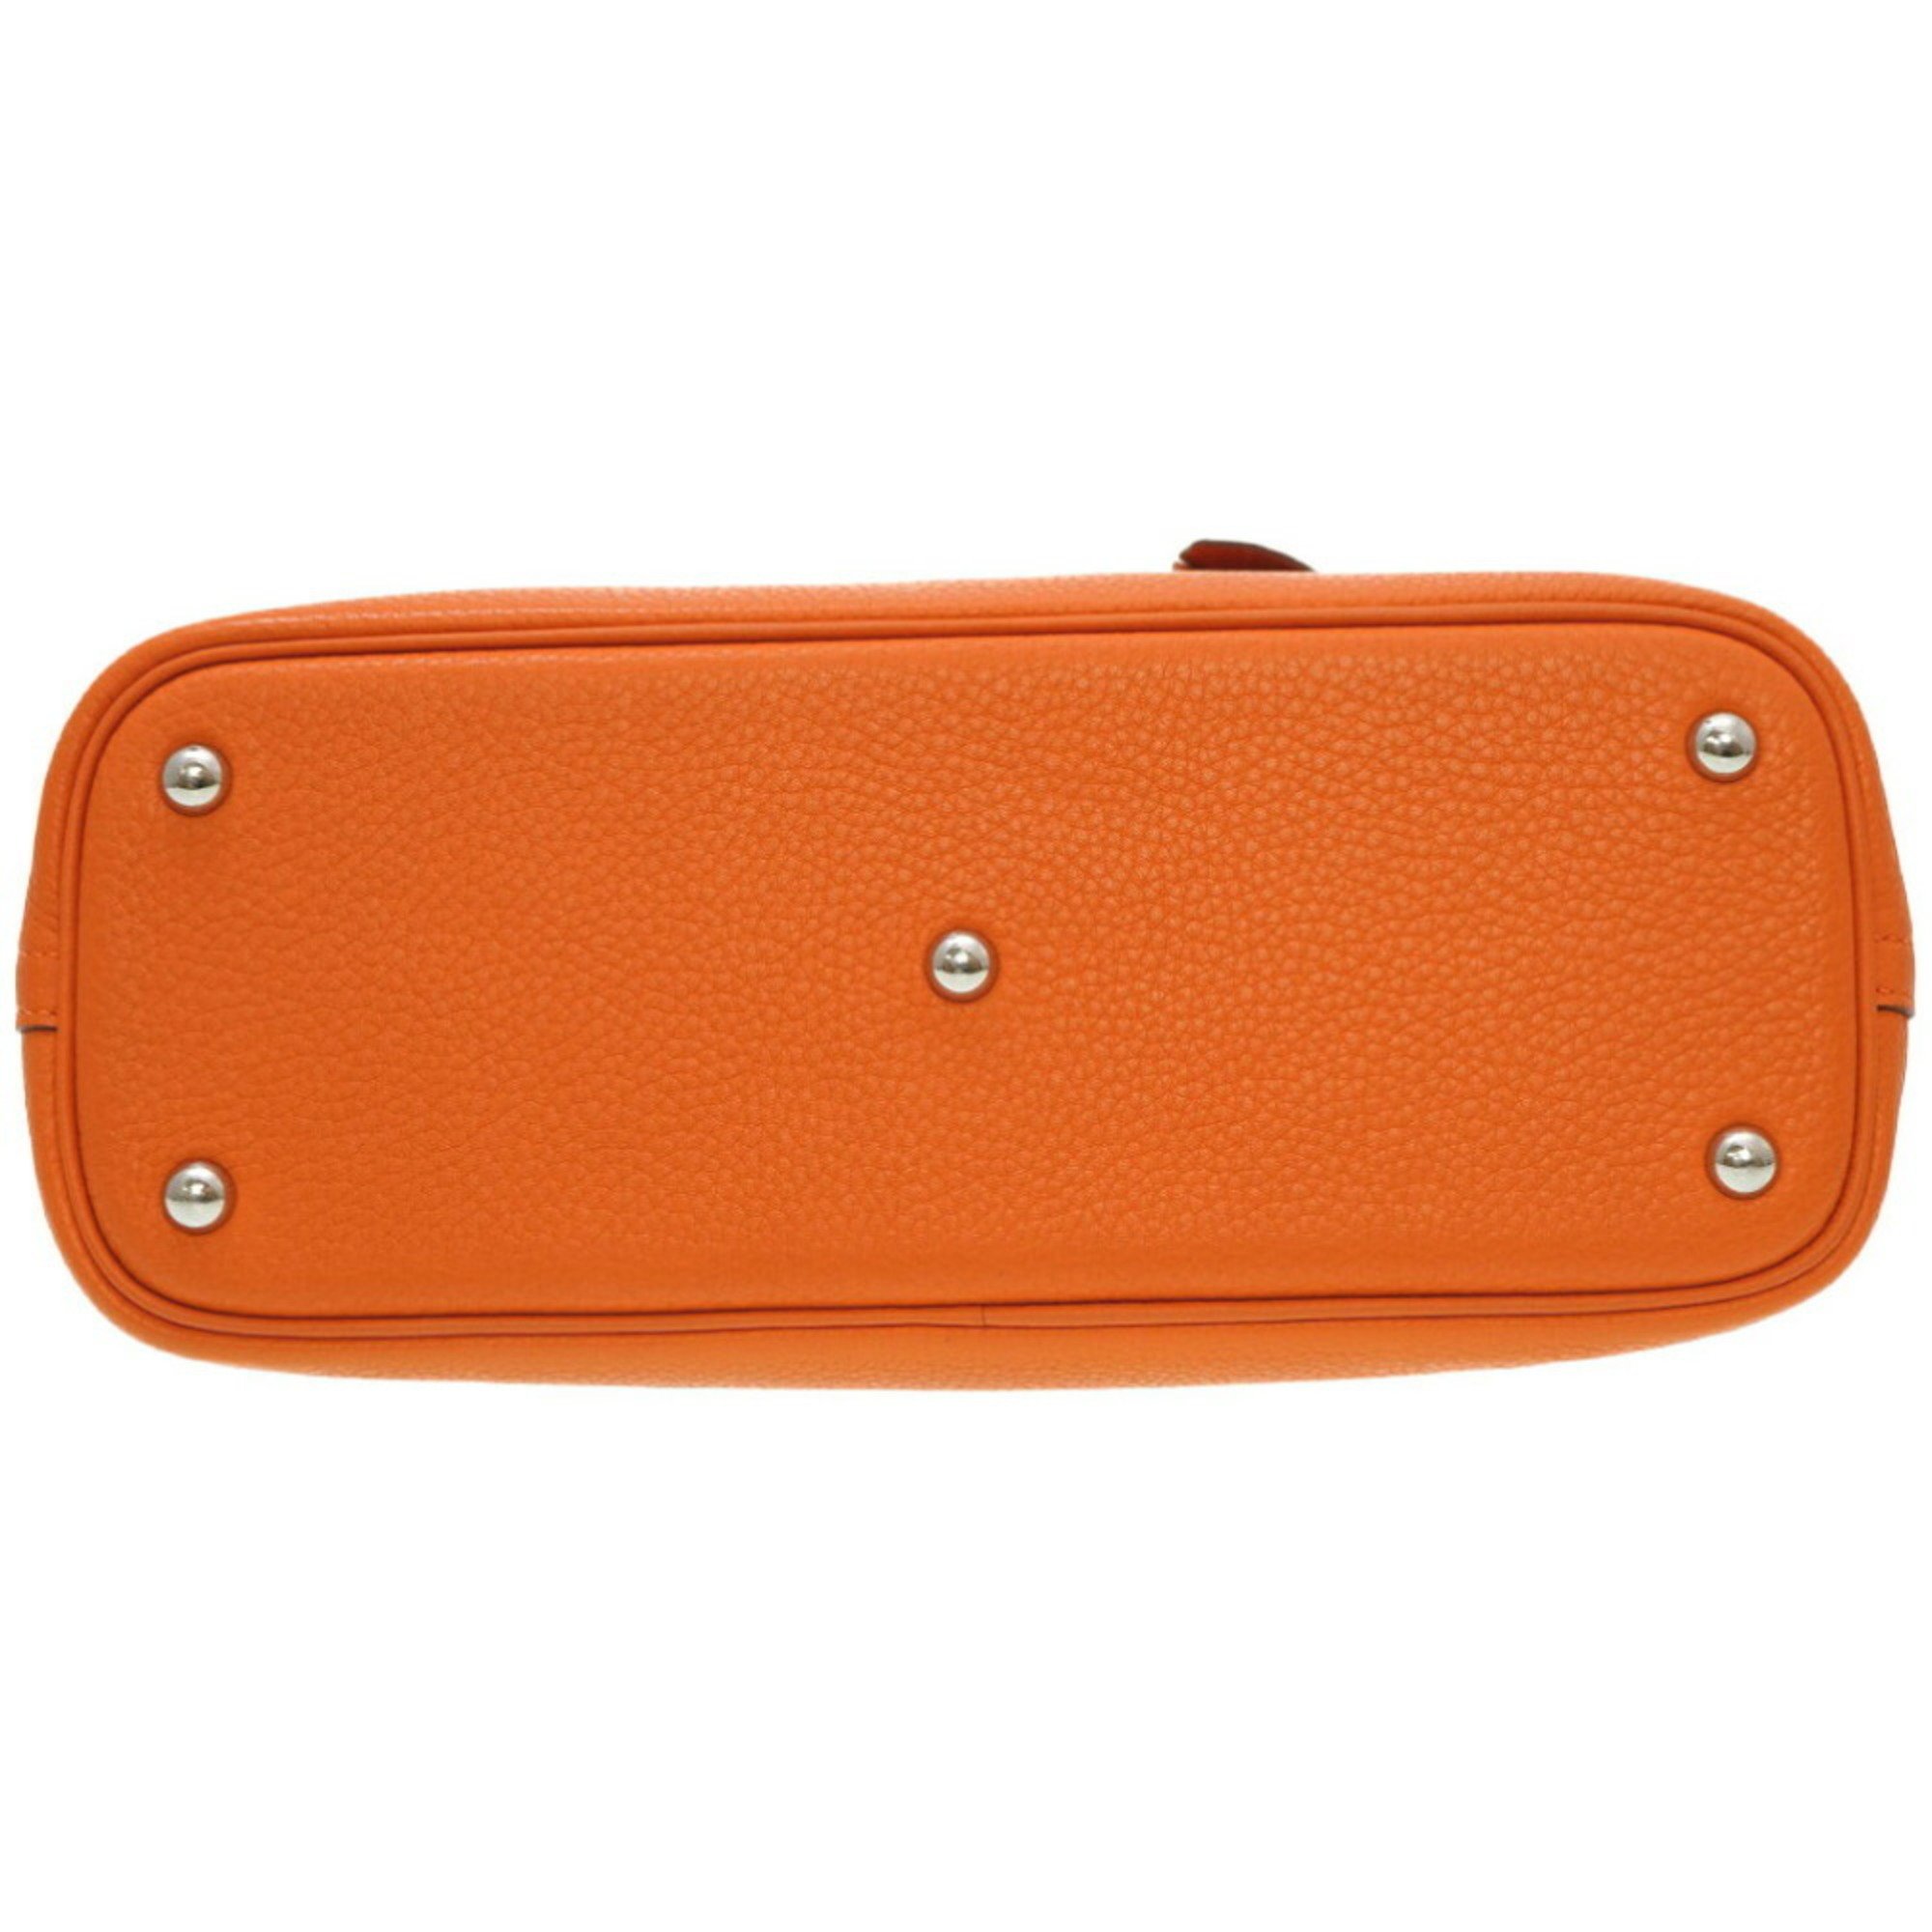 Hermes Bolide 31 Lyon Clemence Orange Shoulder Strap Handbag To O Engraved